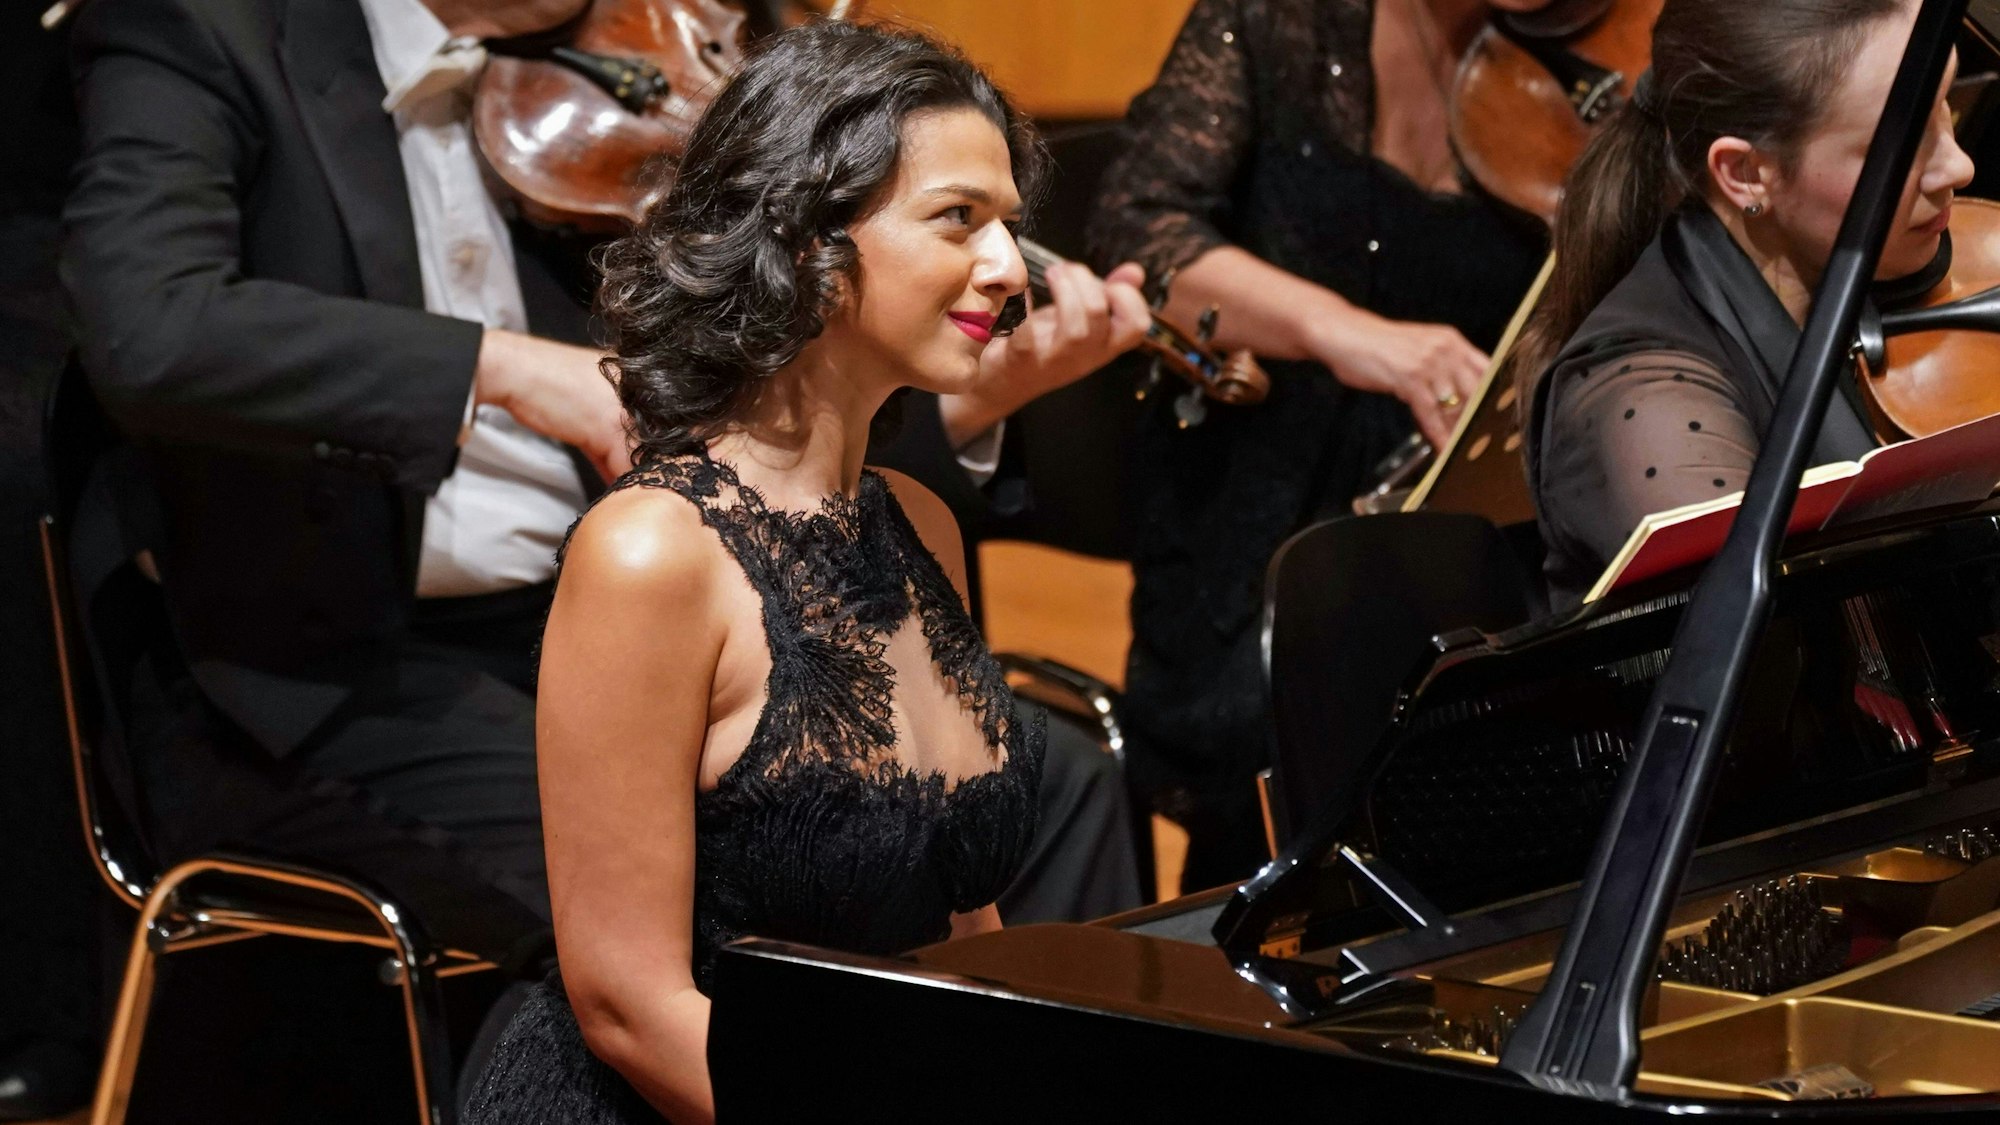 Pianistin Khatia Buniatishvili sitzt im Konzertsaal vor ihrem Flügel, sie hat dunkle Haare und trägt ein schwarzes Kleid.